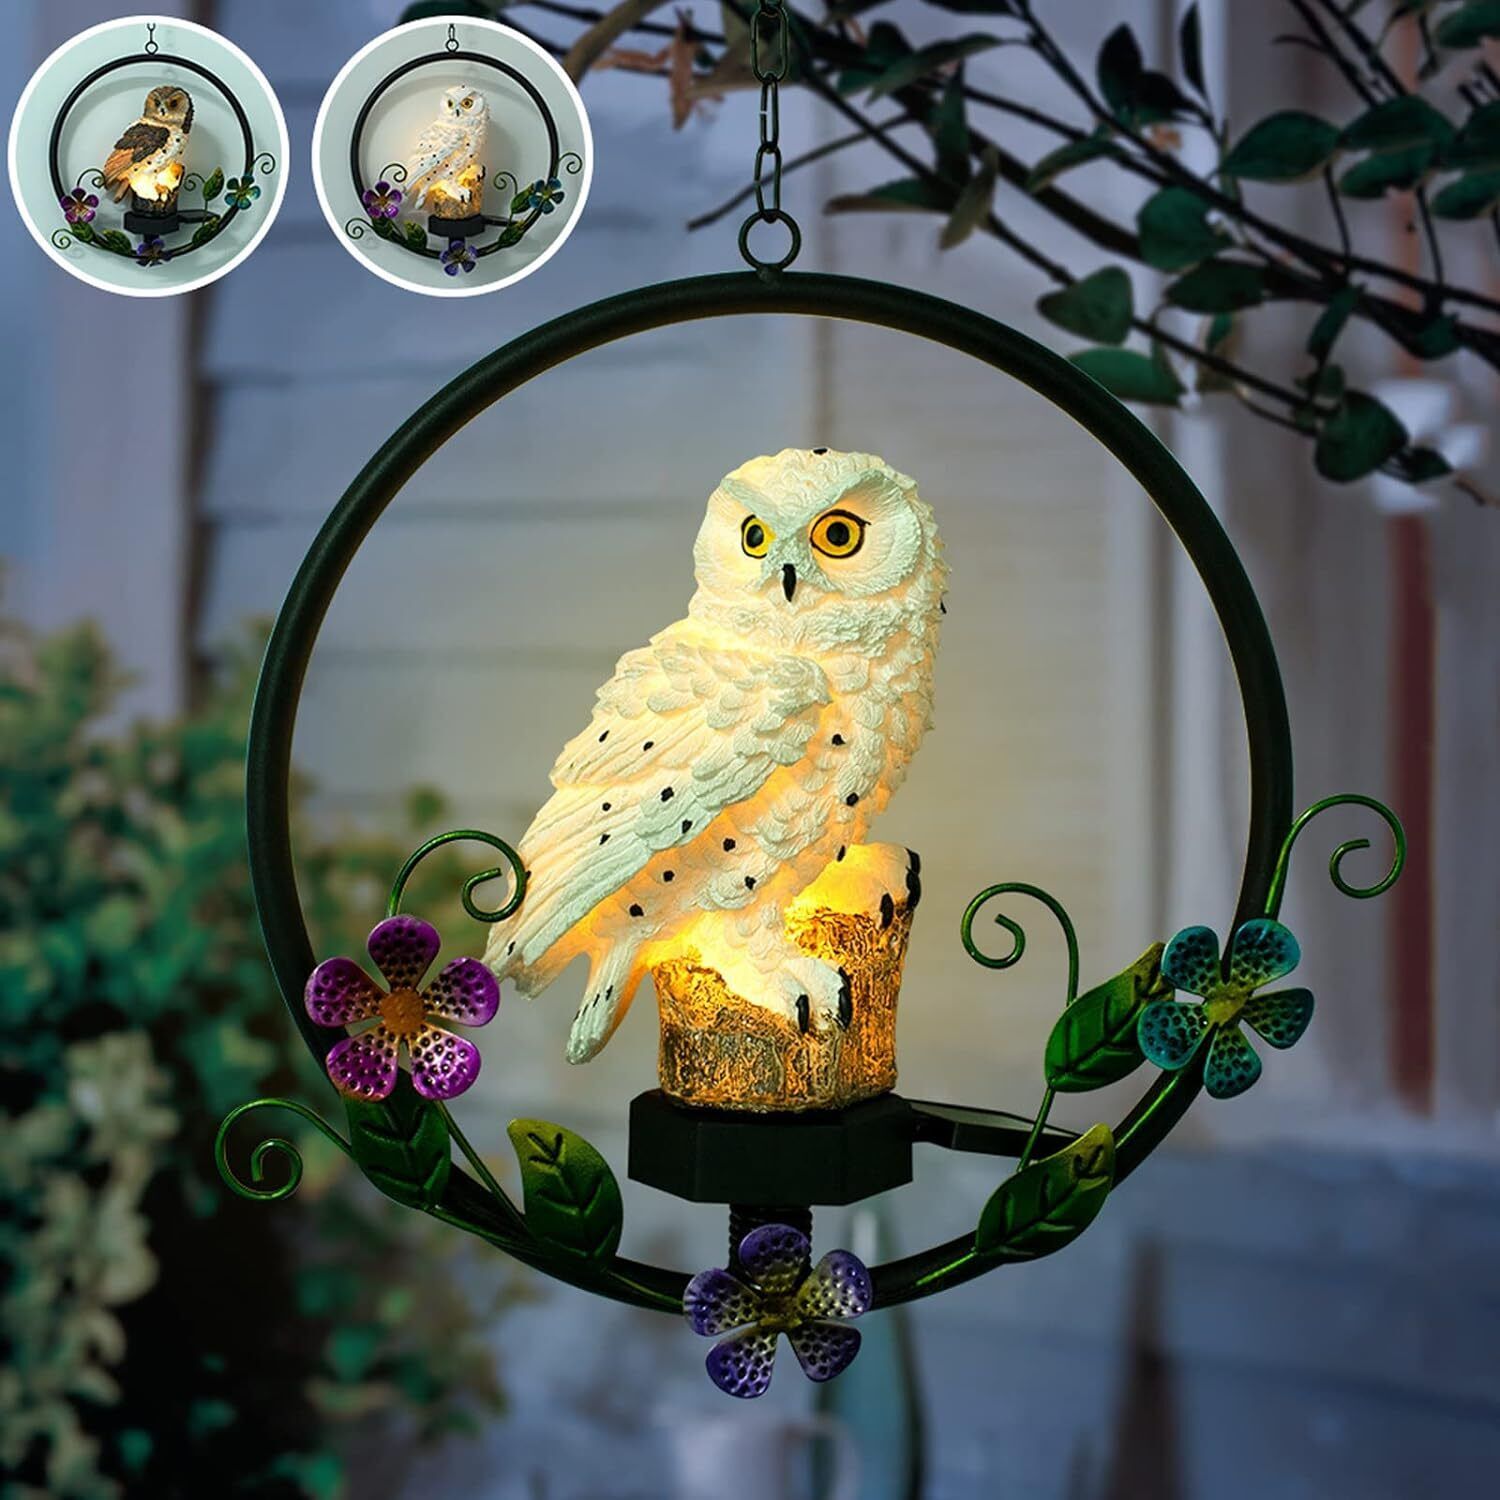 Solar Powered Garden Owl Statue Waterproof Hanging for Outdoor Decorative Unique